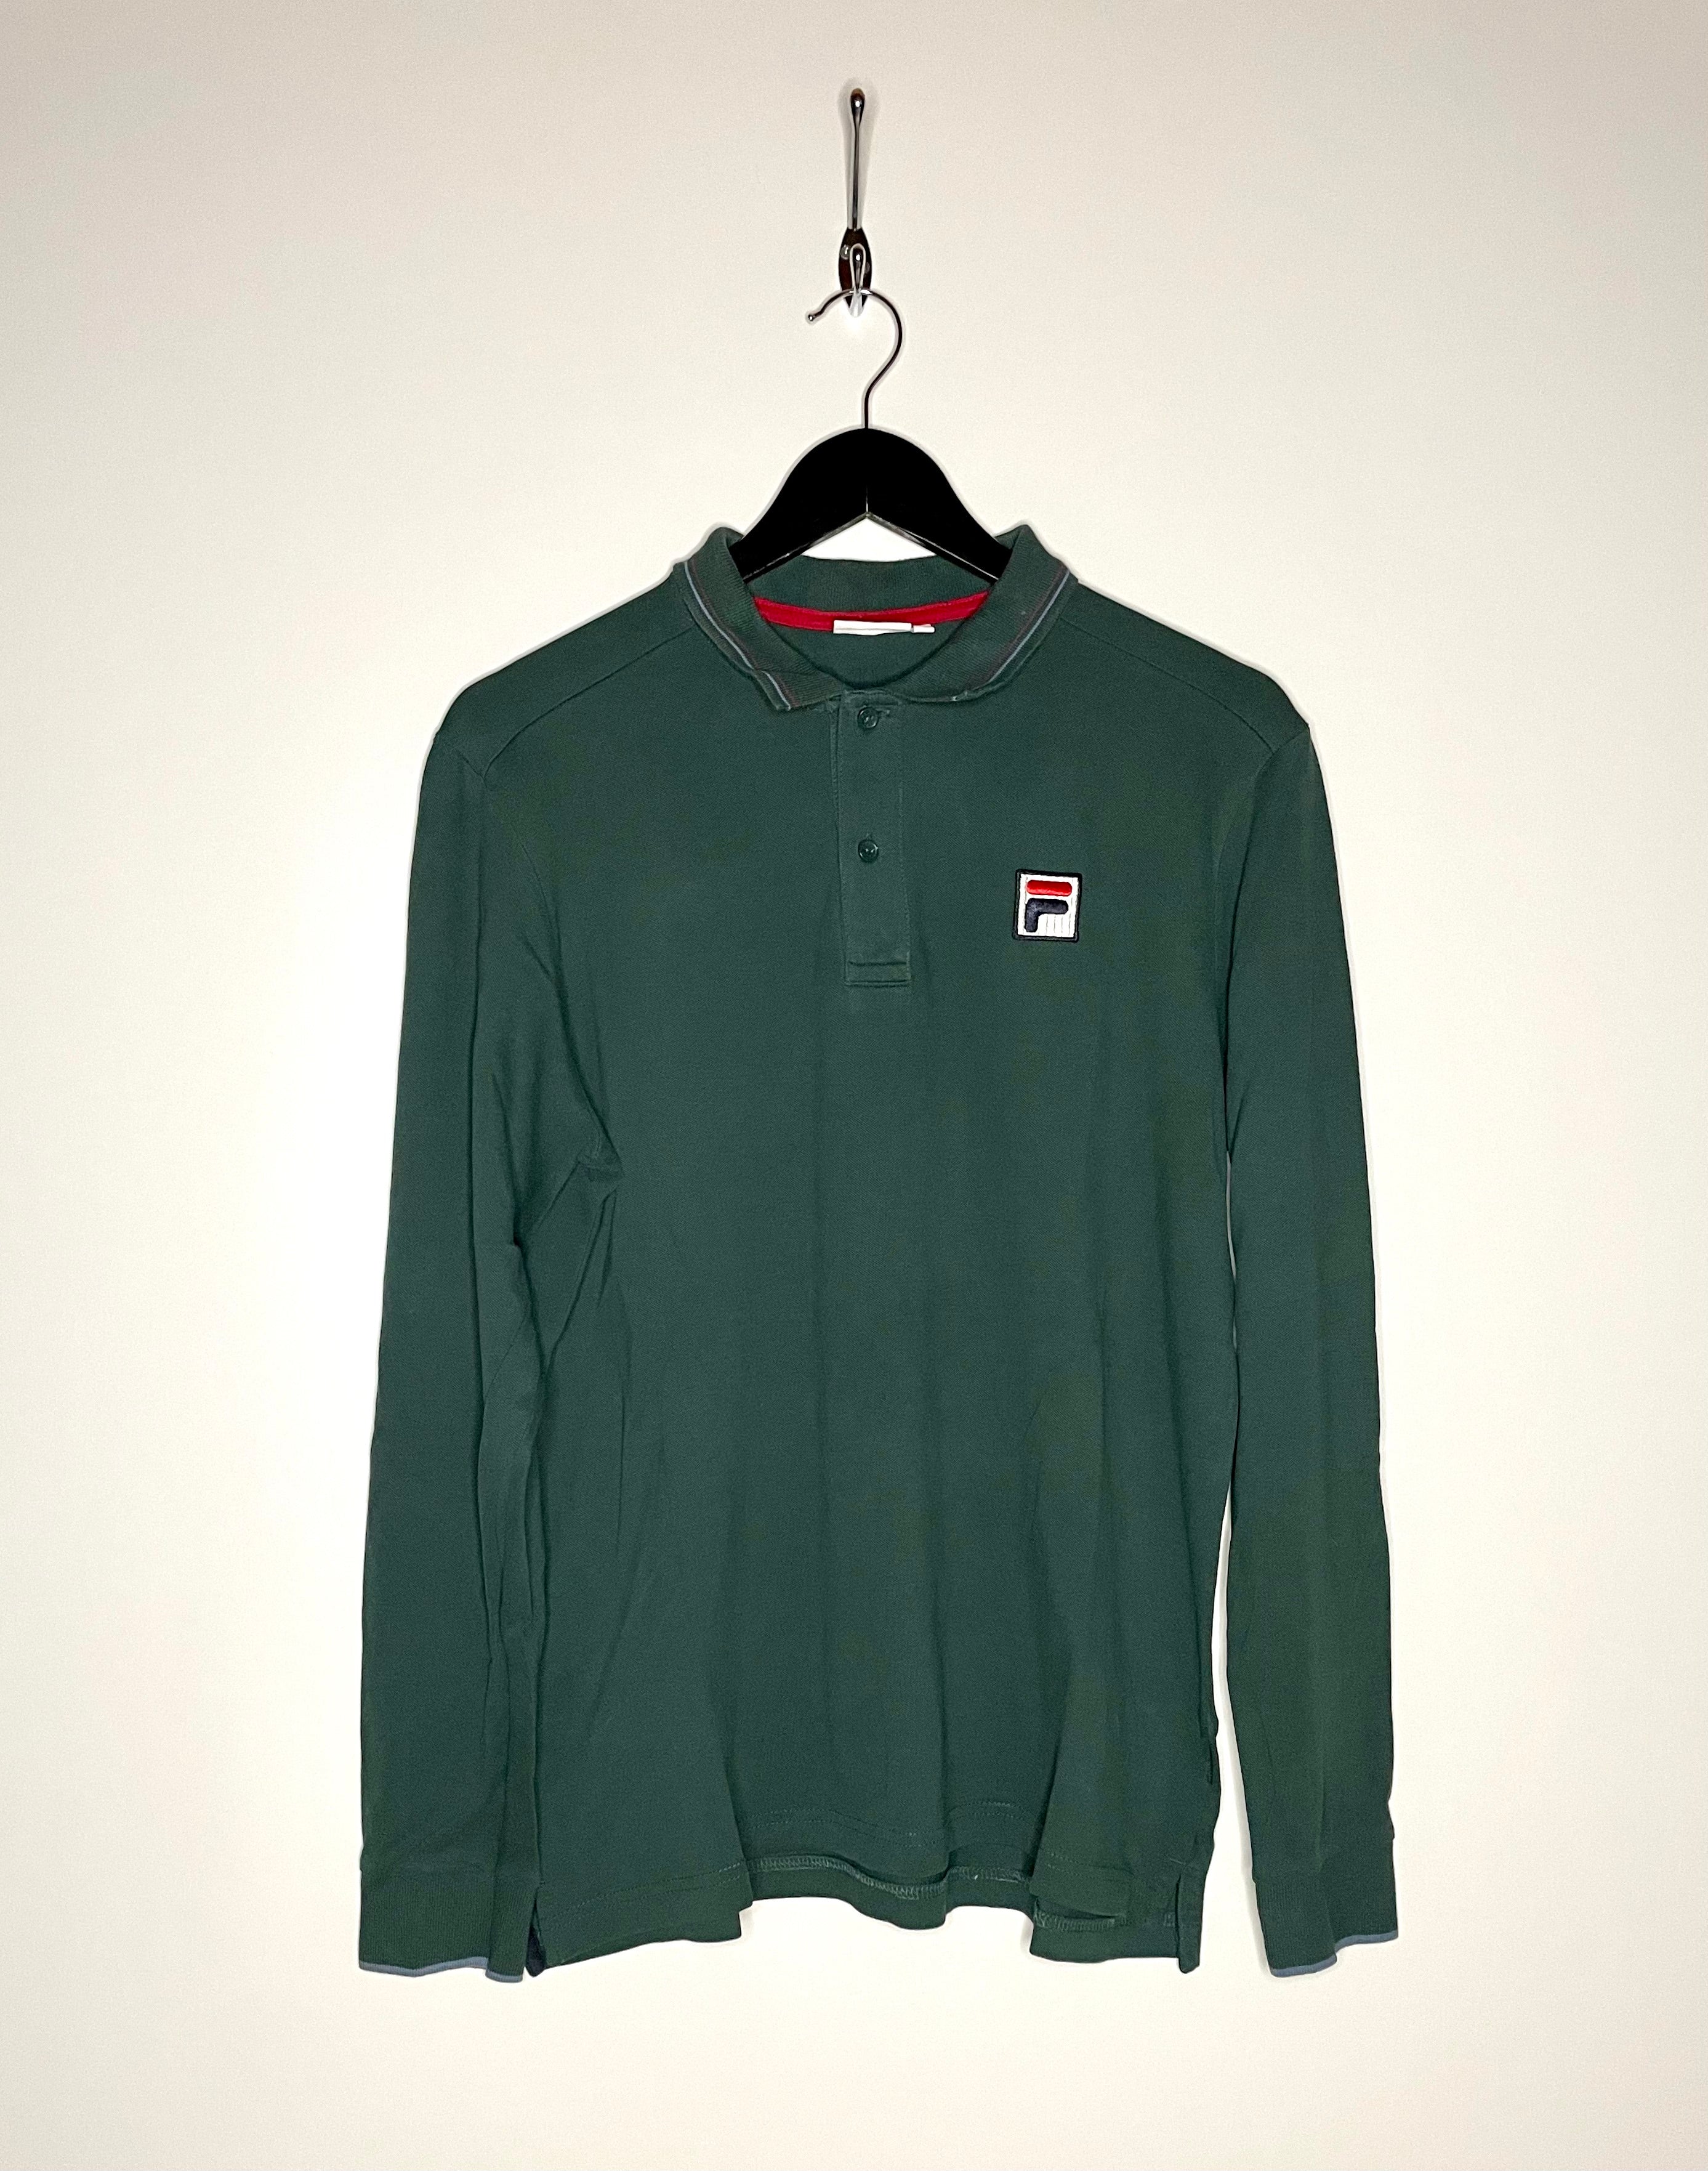 FILA Vintage Langarm Poloshirt Grün Größe M